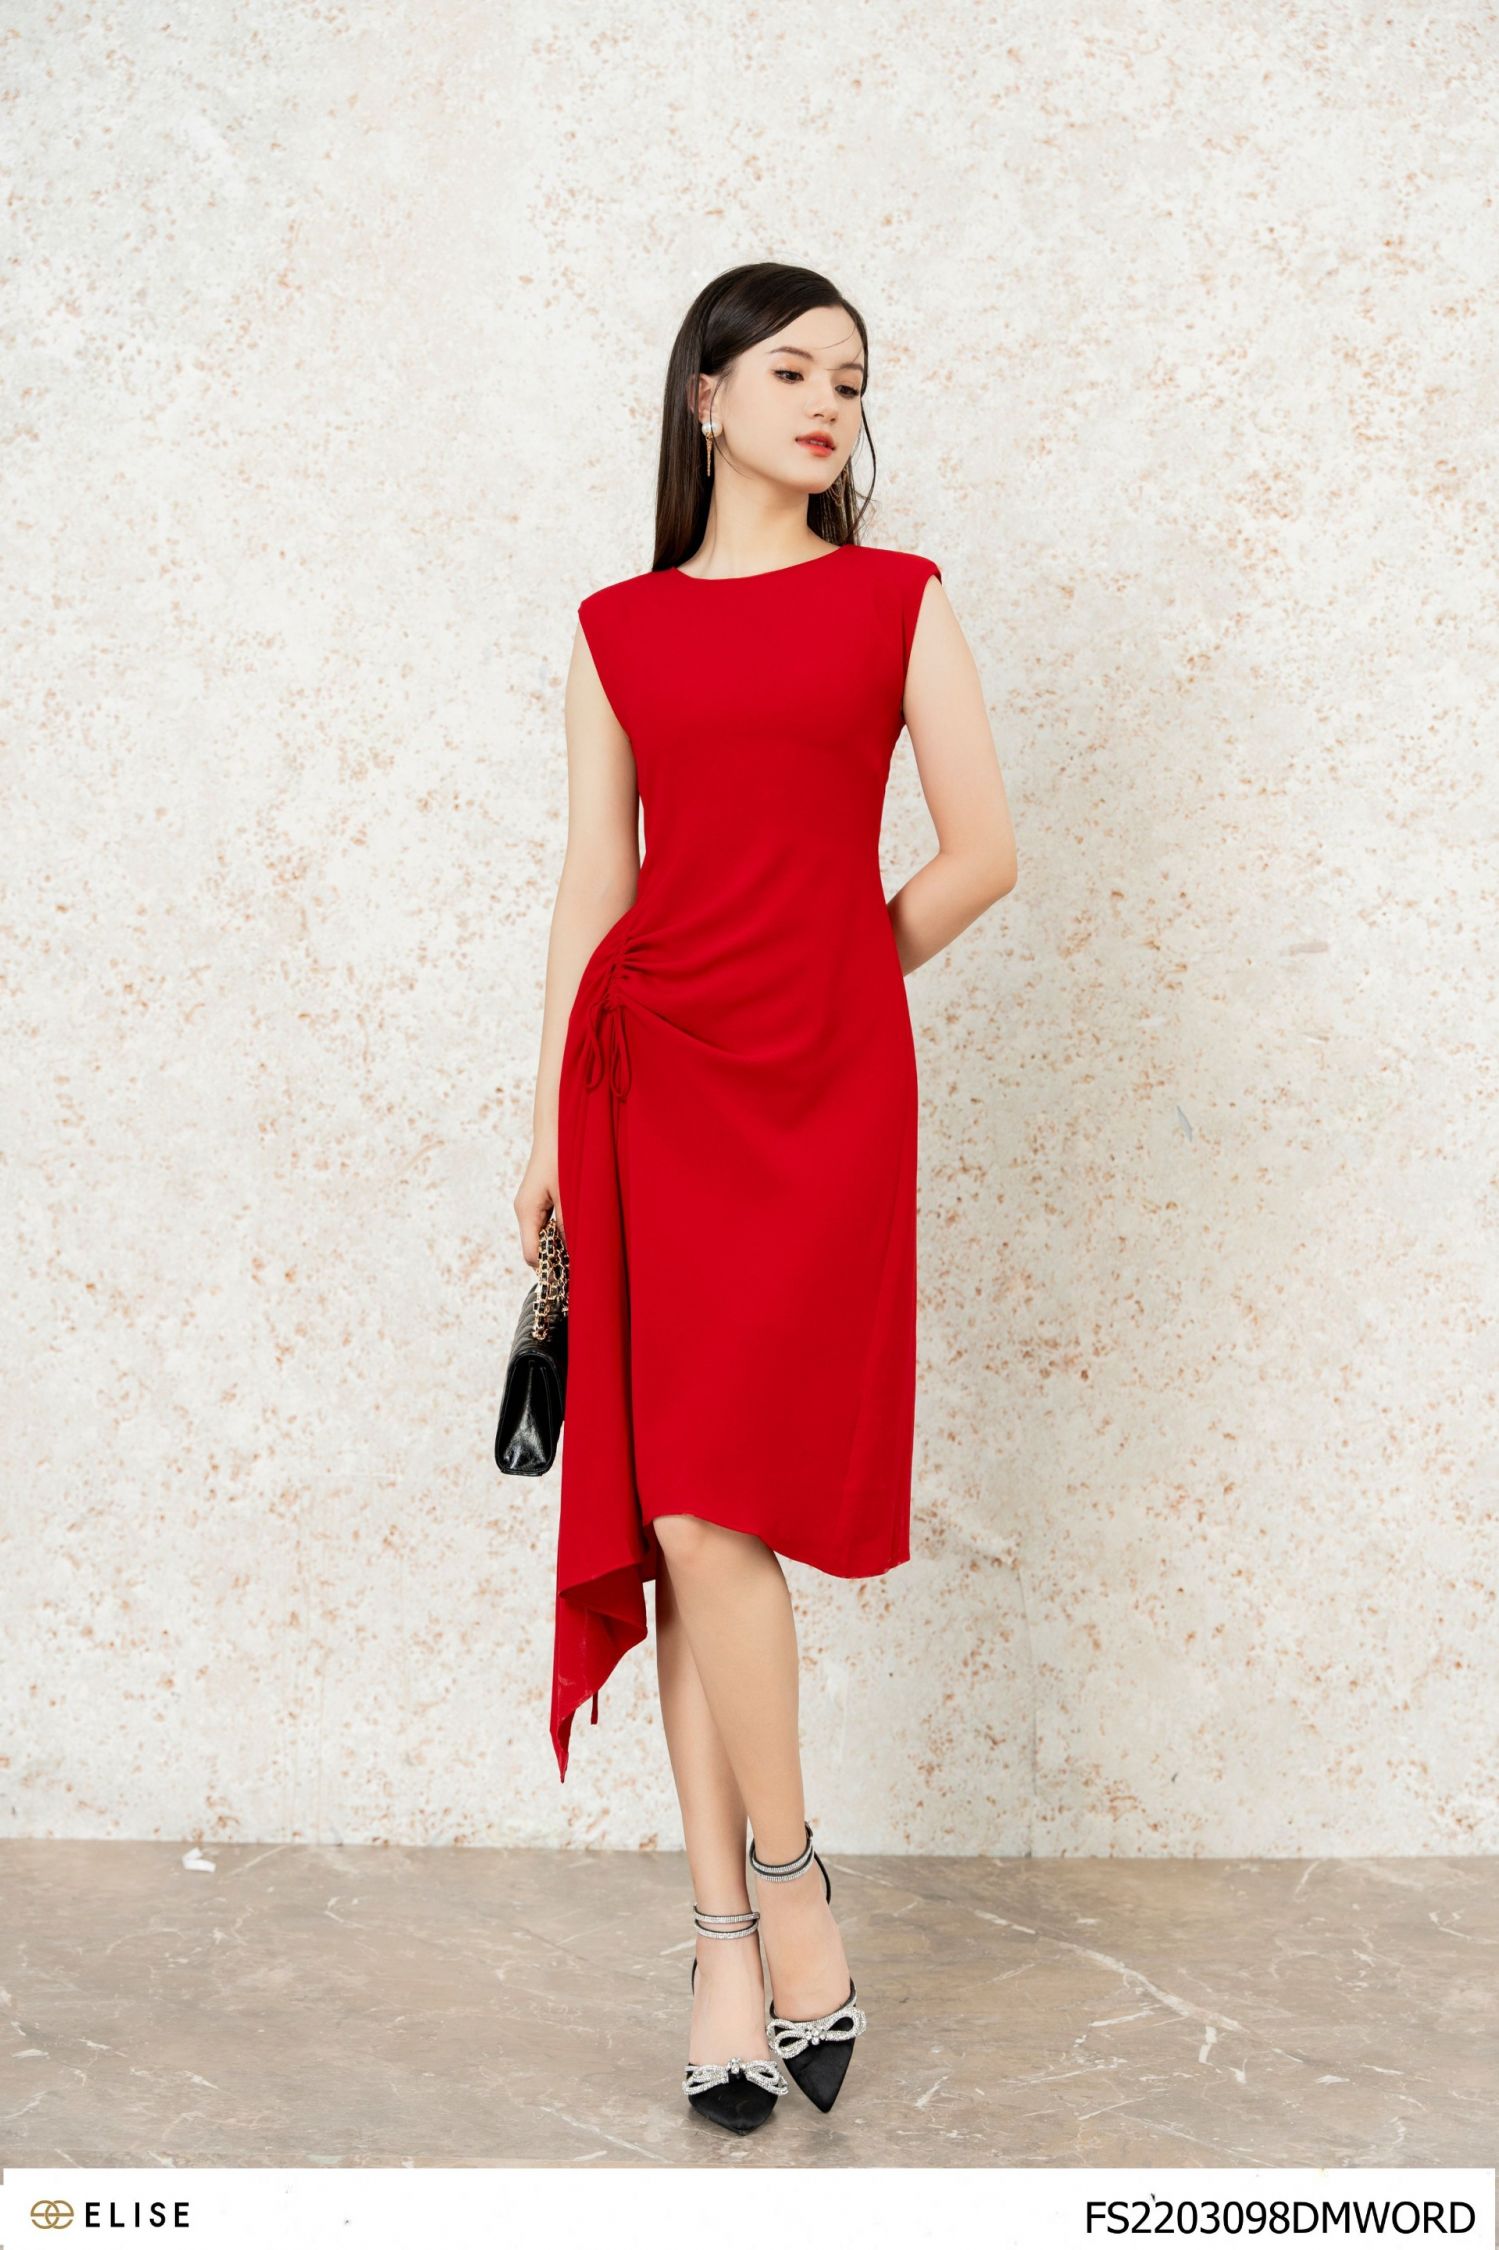 Elise - Thời trang Elise giảm giá khuyến mại Tháng 12/2020 | Fashion,  Shoulder dress, Long sleeve blouse